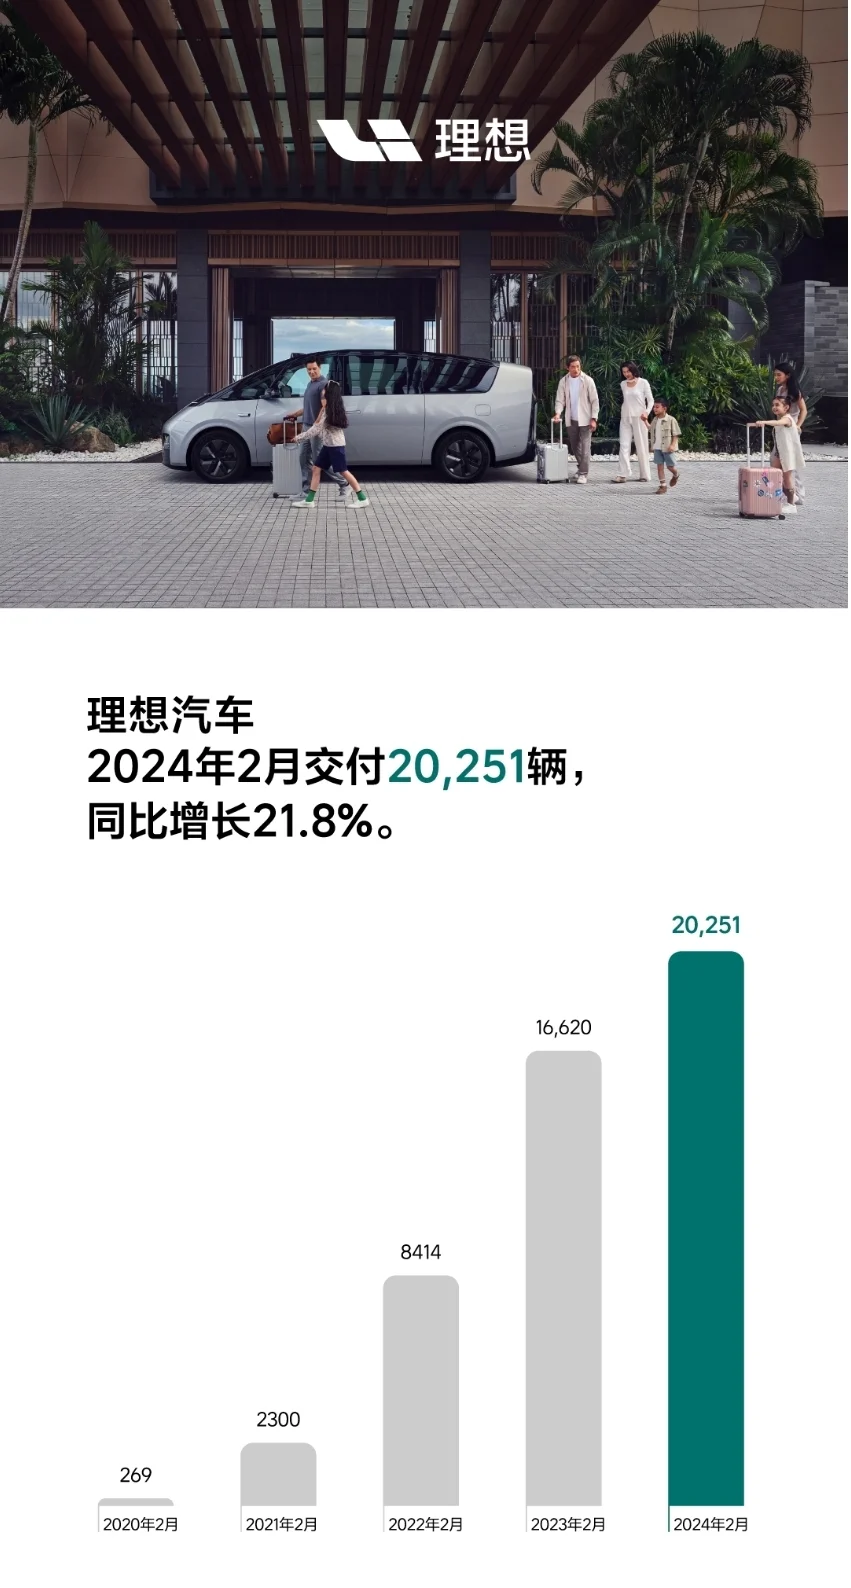 理想汽车2月交付新车20251辆 环比下降35%